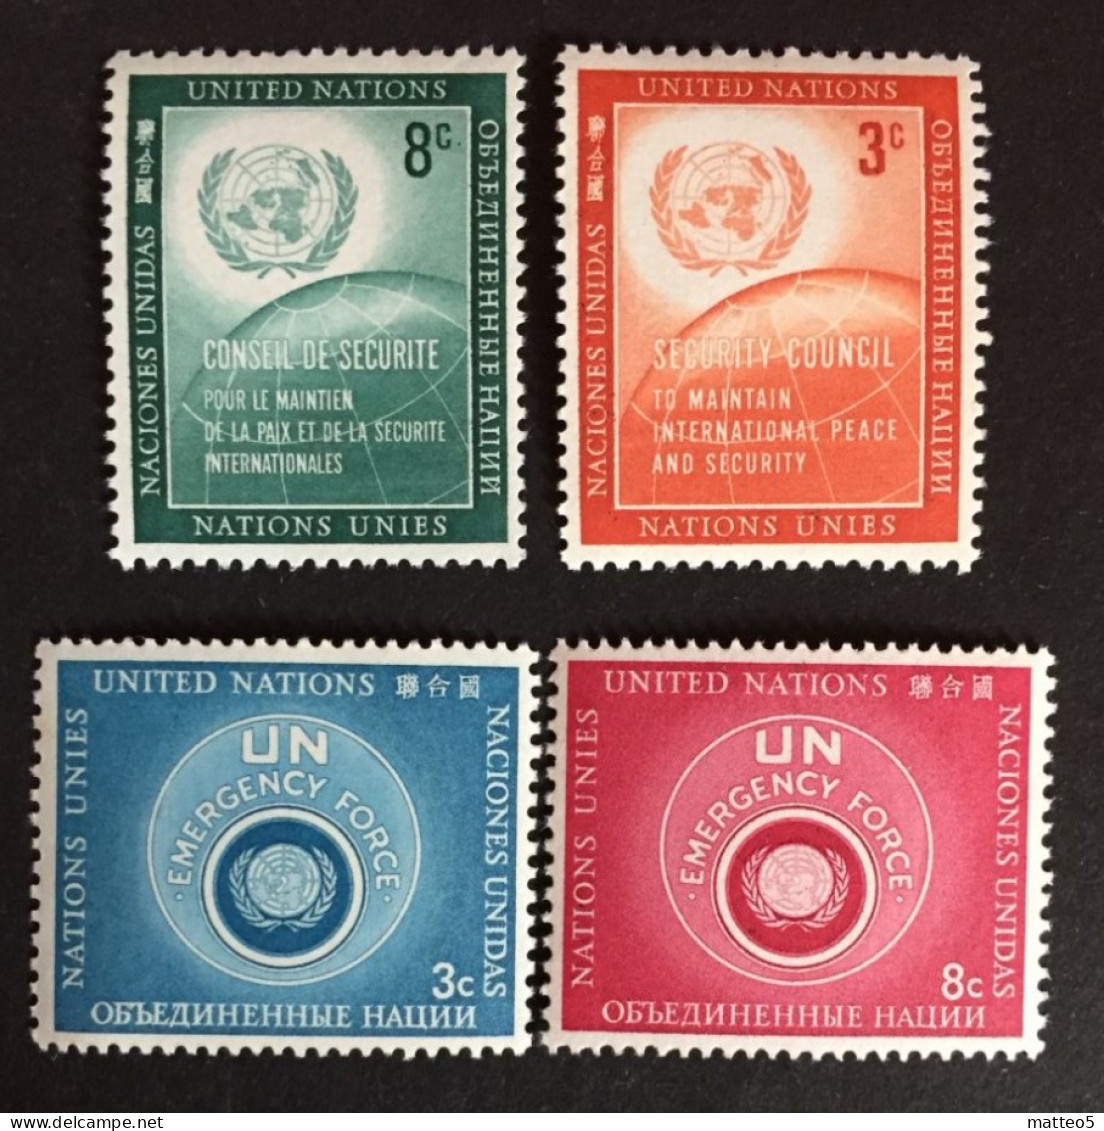 1957 - United Nations UNO UN ONU - UN Emergency Force And Security Council - Unused - Nuevos